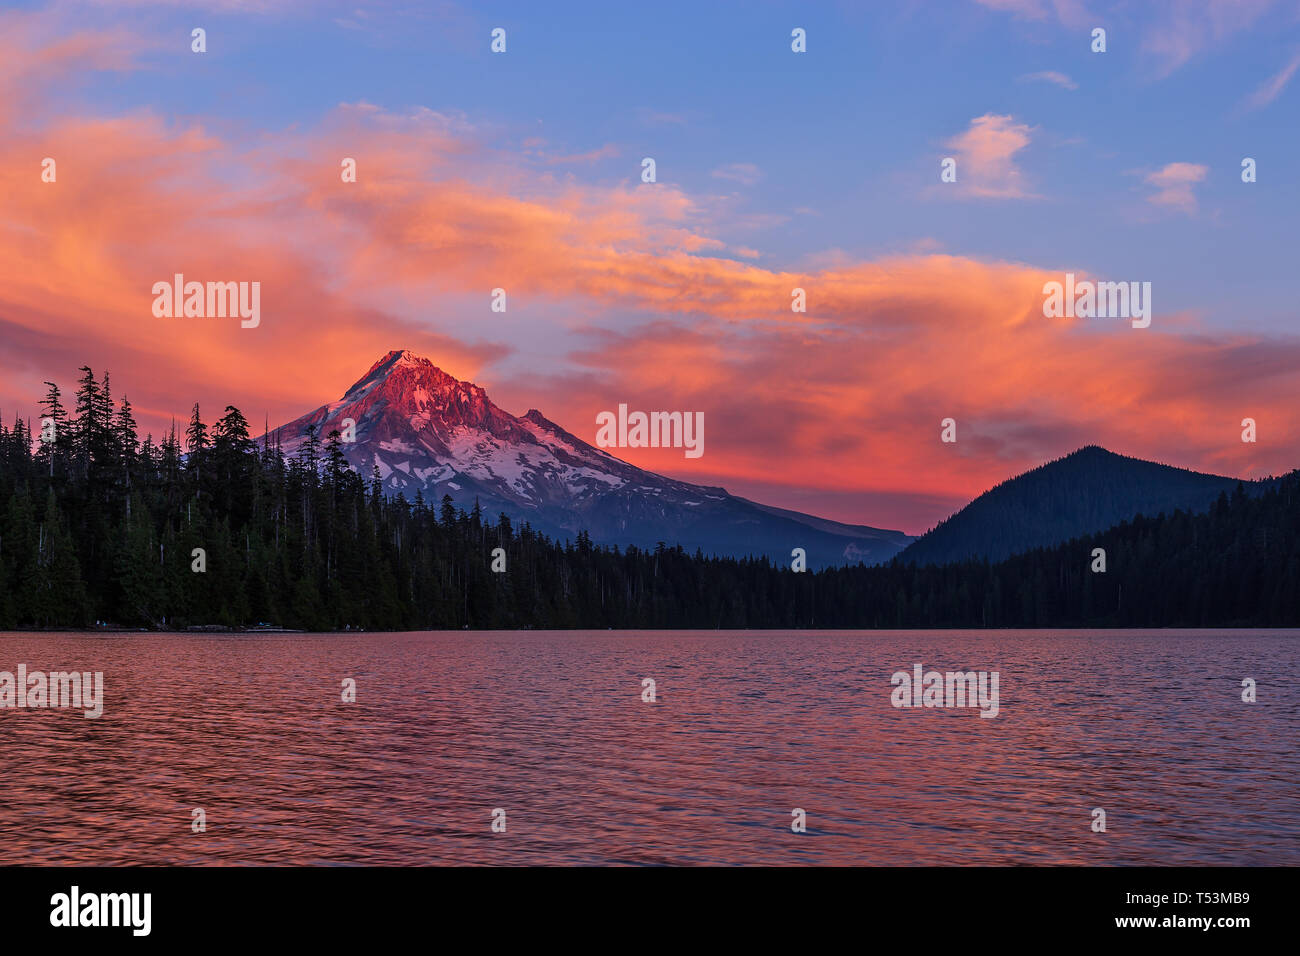 Paisaje escénico con Mt. Hood al atardecer desde Lost Lake, Oregon, Estados Unidos Foto de stock